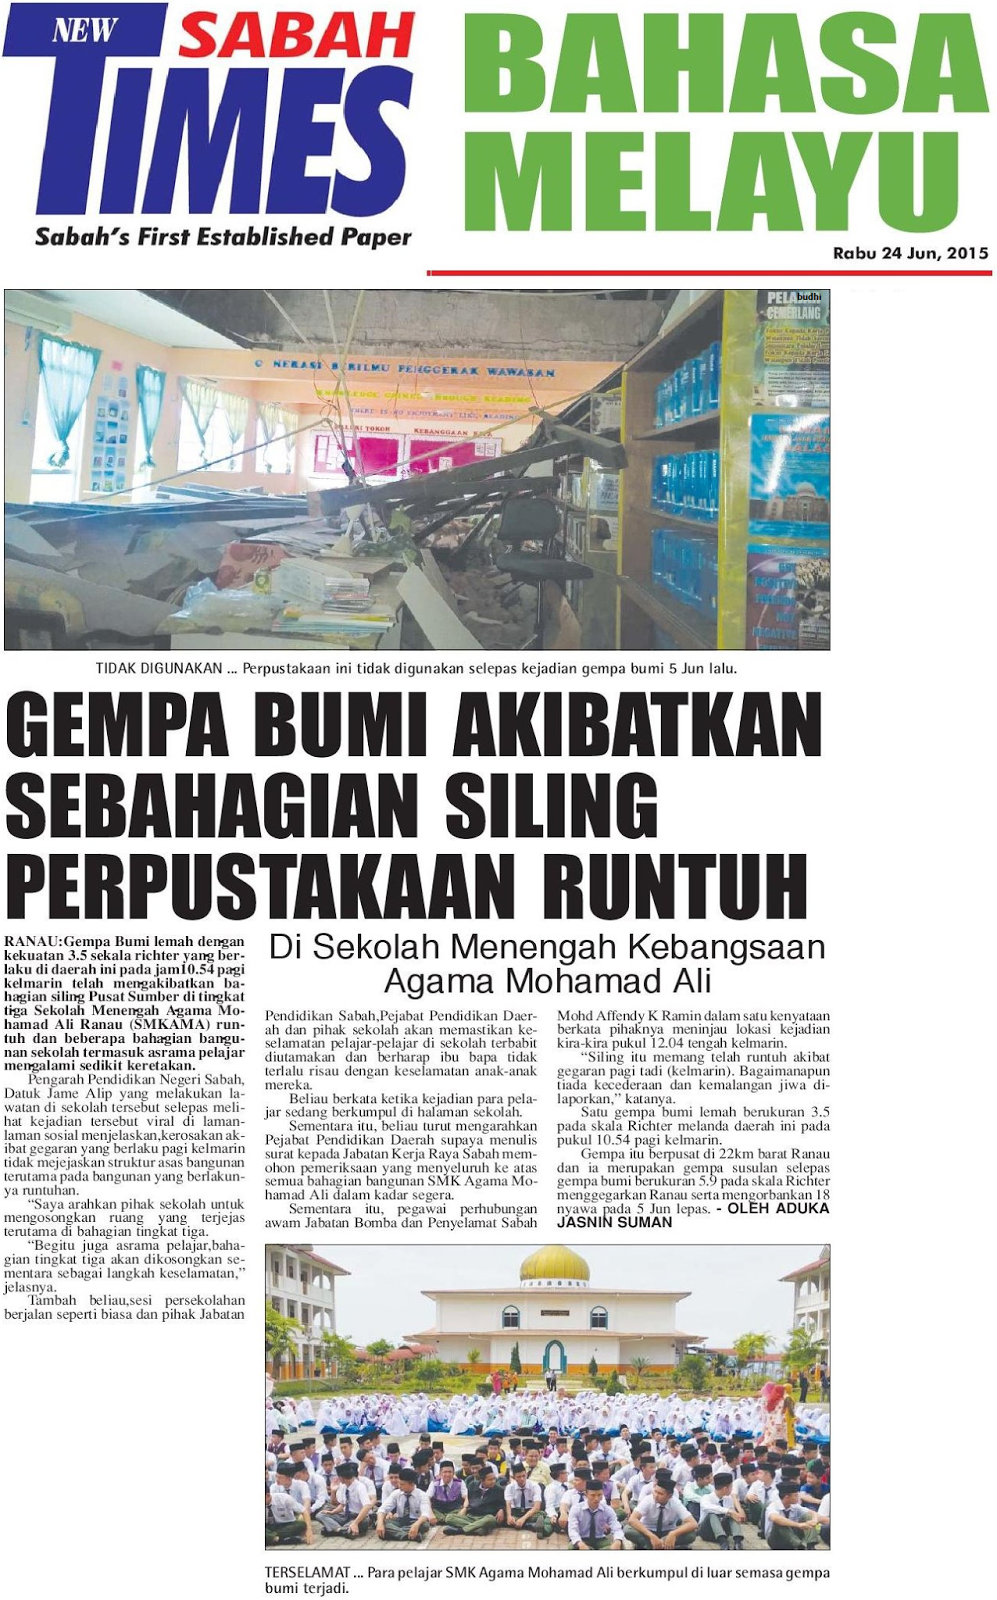 Keratan Surat Kabar Gempa Bumi Sabah 2015